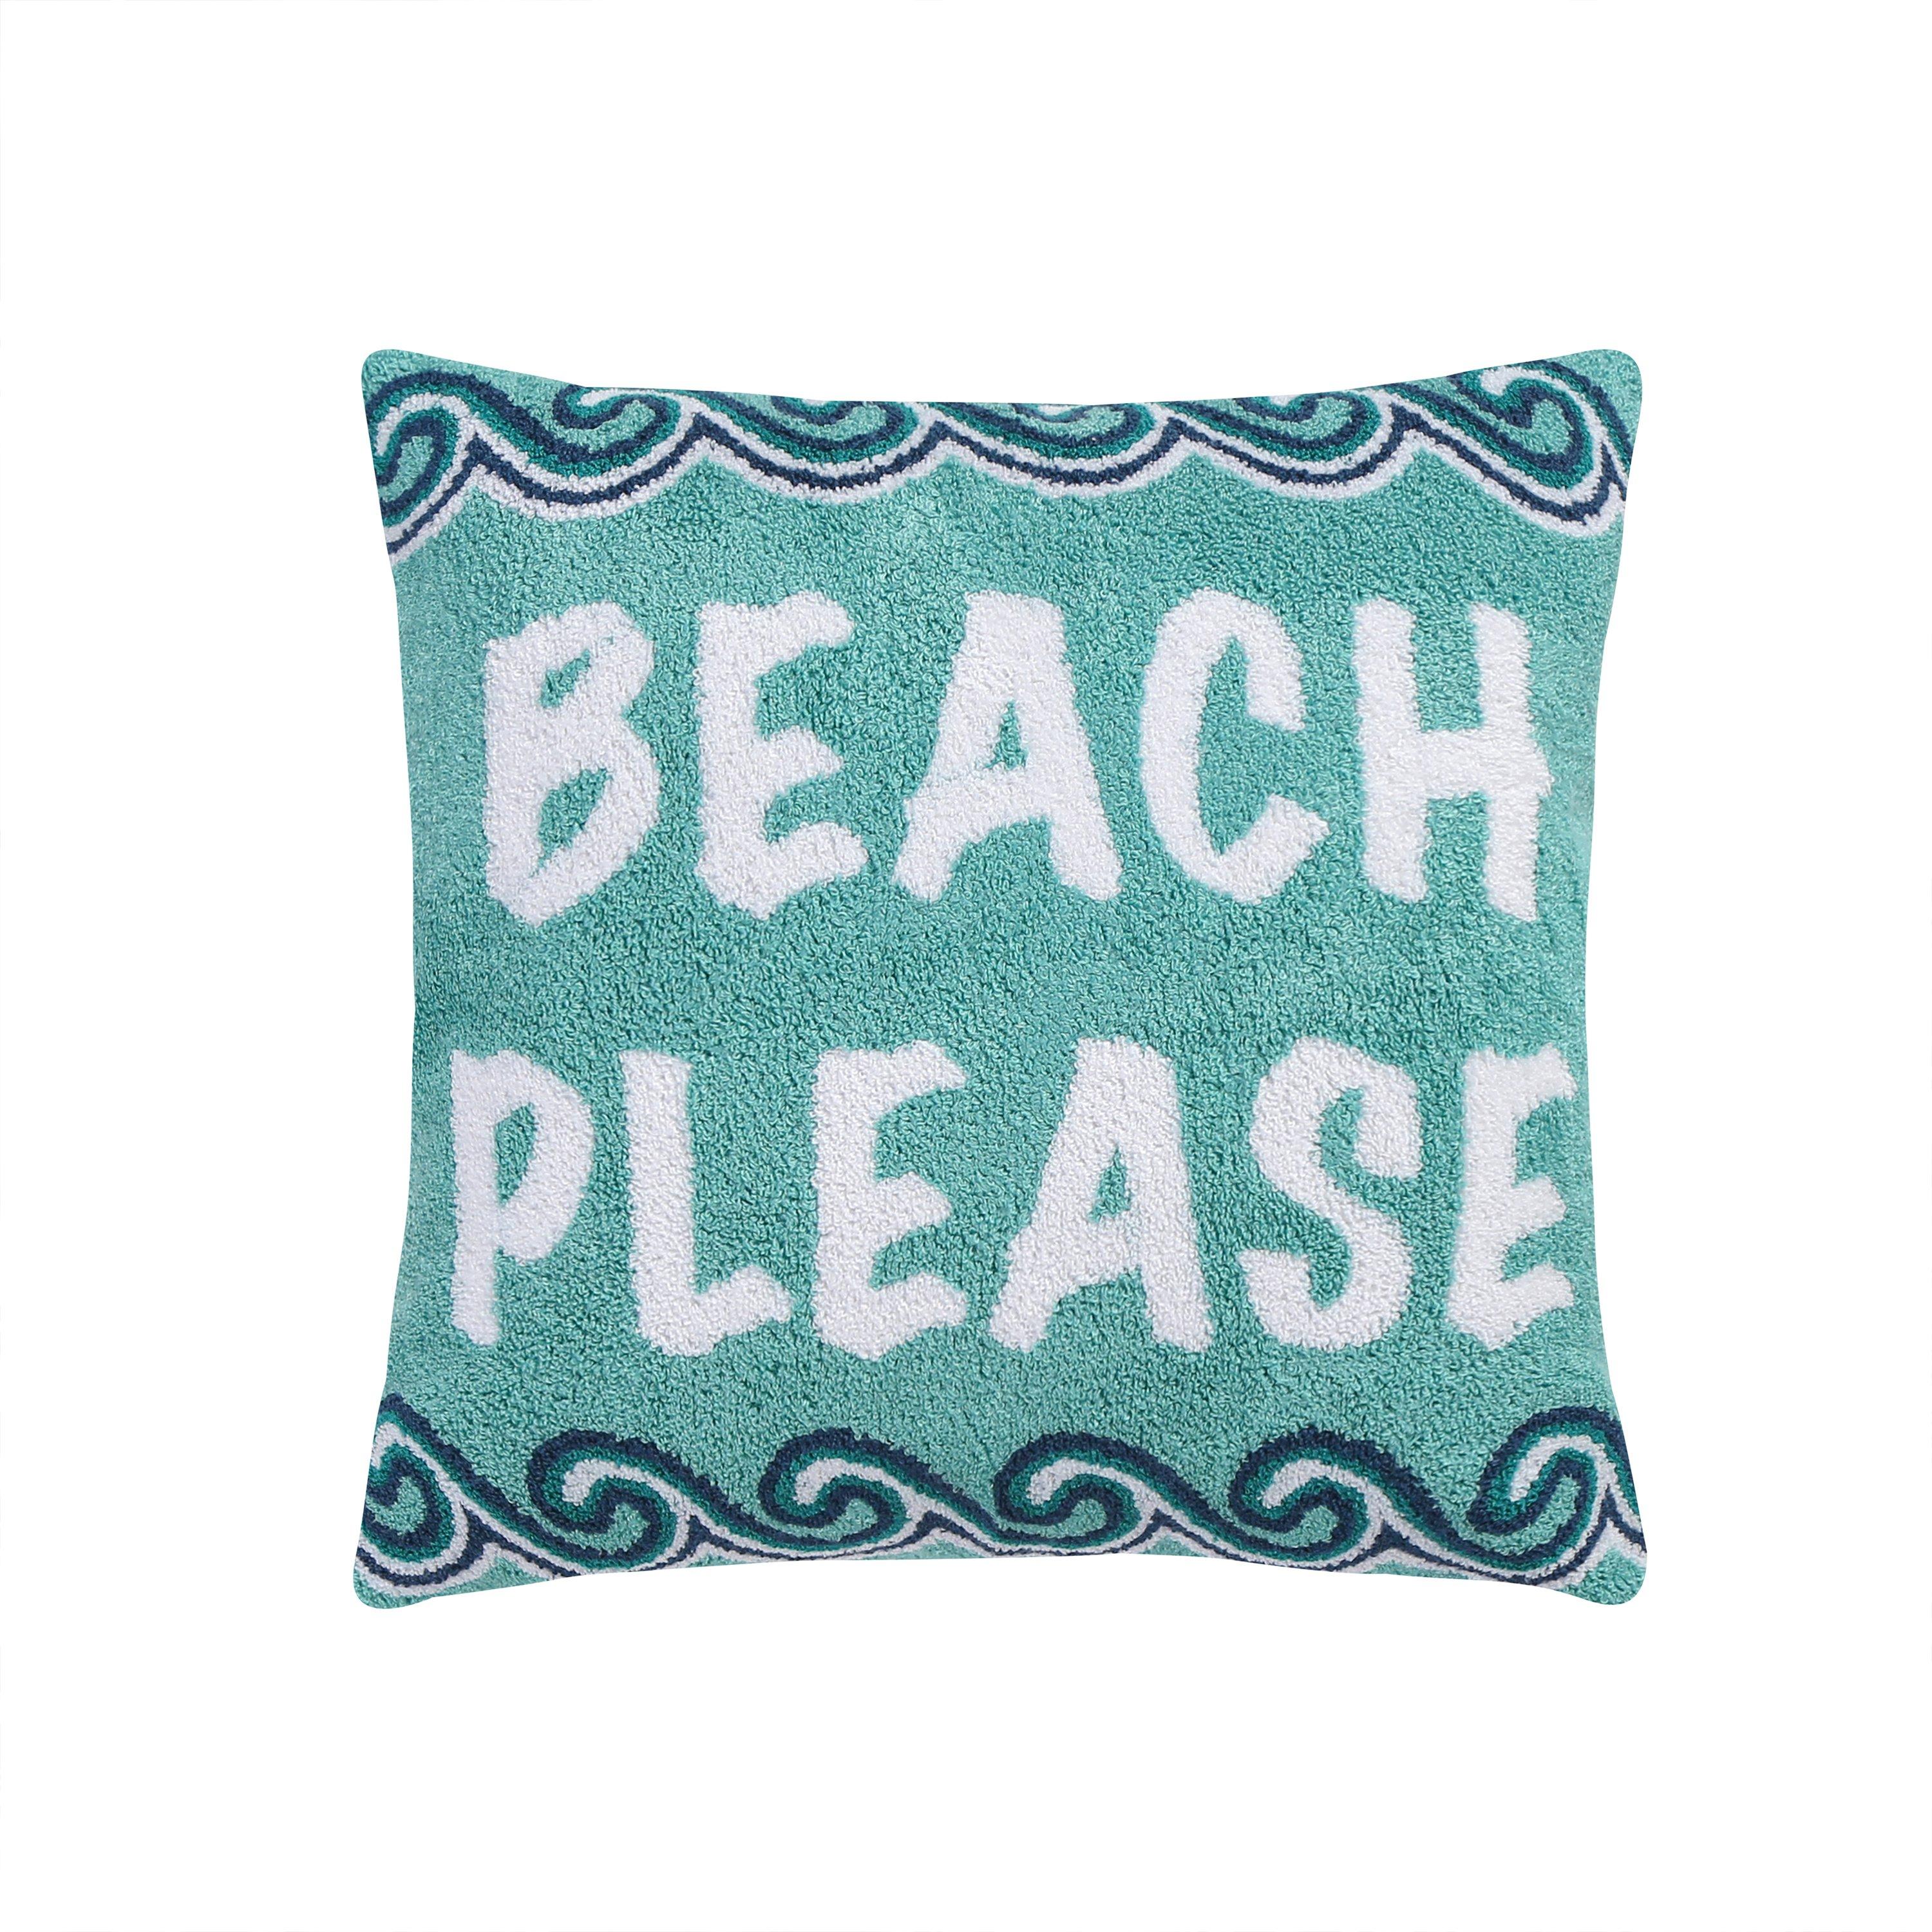 Levtex Home Coastal Beach Days Beach Please Pillow